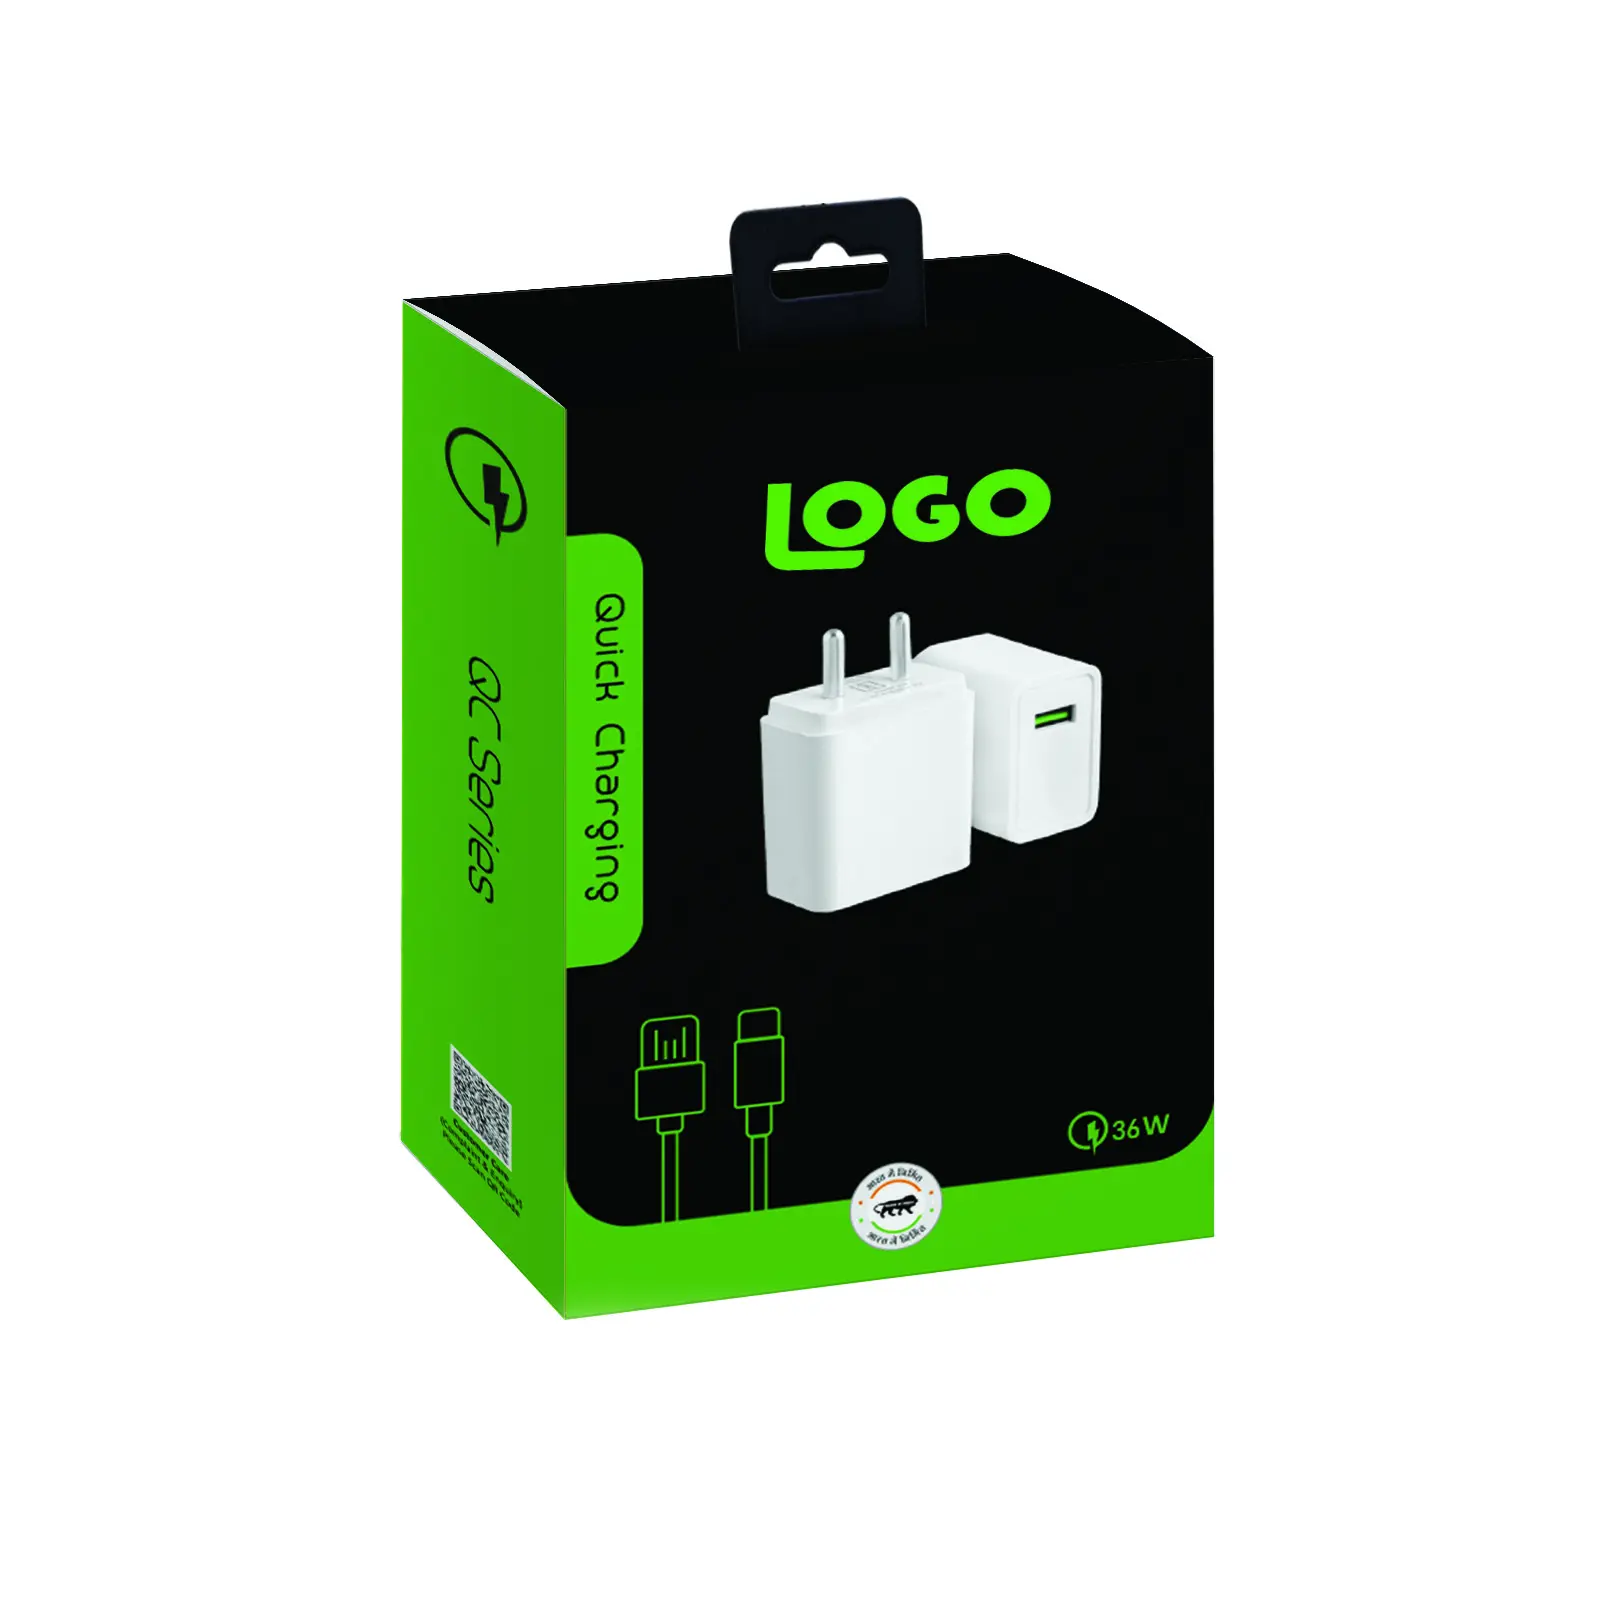 Personalizar productos electrónicos Cable DE DATOS Usb Caja de embalaje al por menor P [Hone Accesorios Paquete electrónico de consumo Cajas de cartón